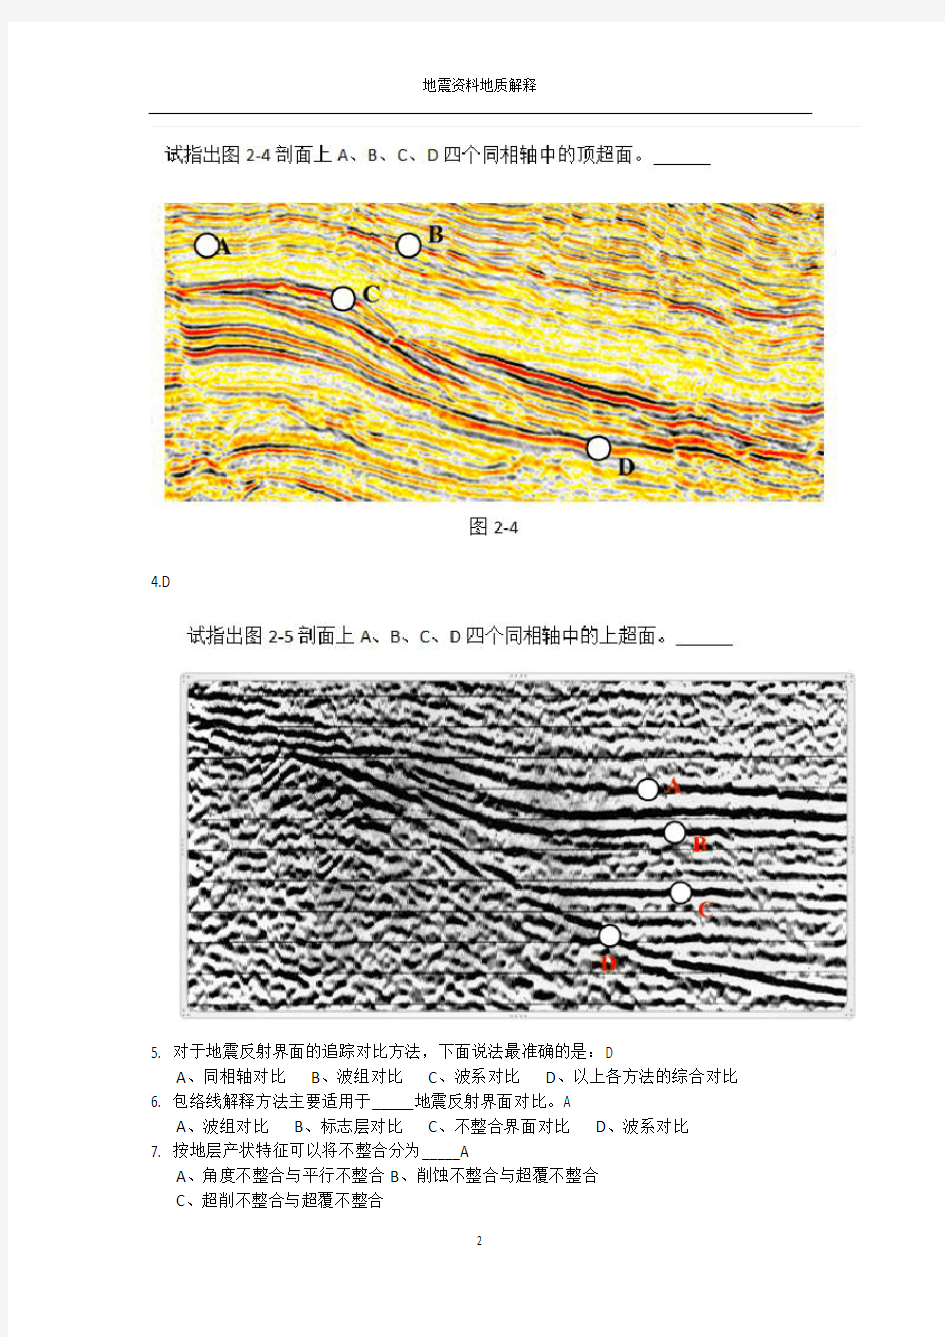 中国石油大学(北京)地震资料在线作业答案